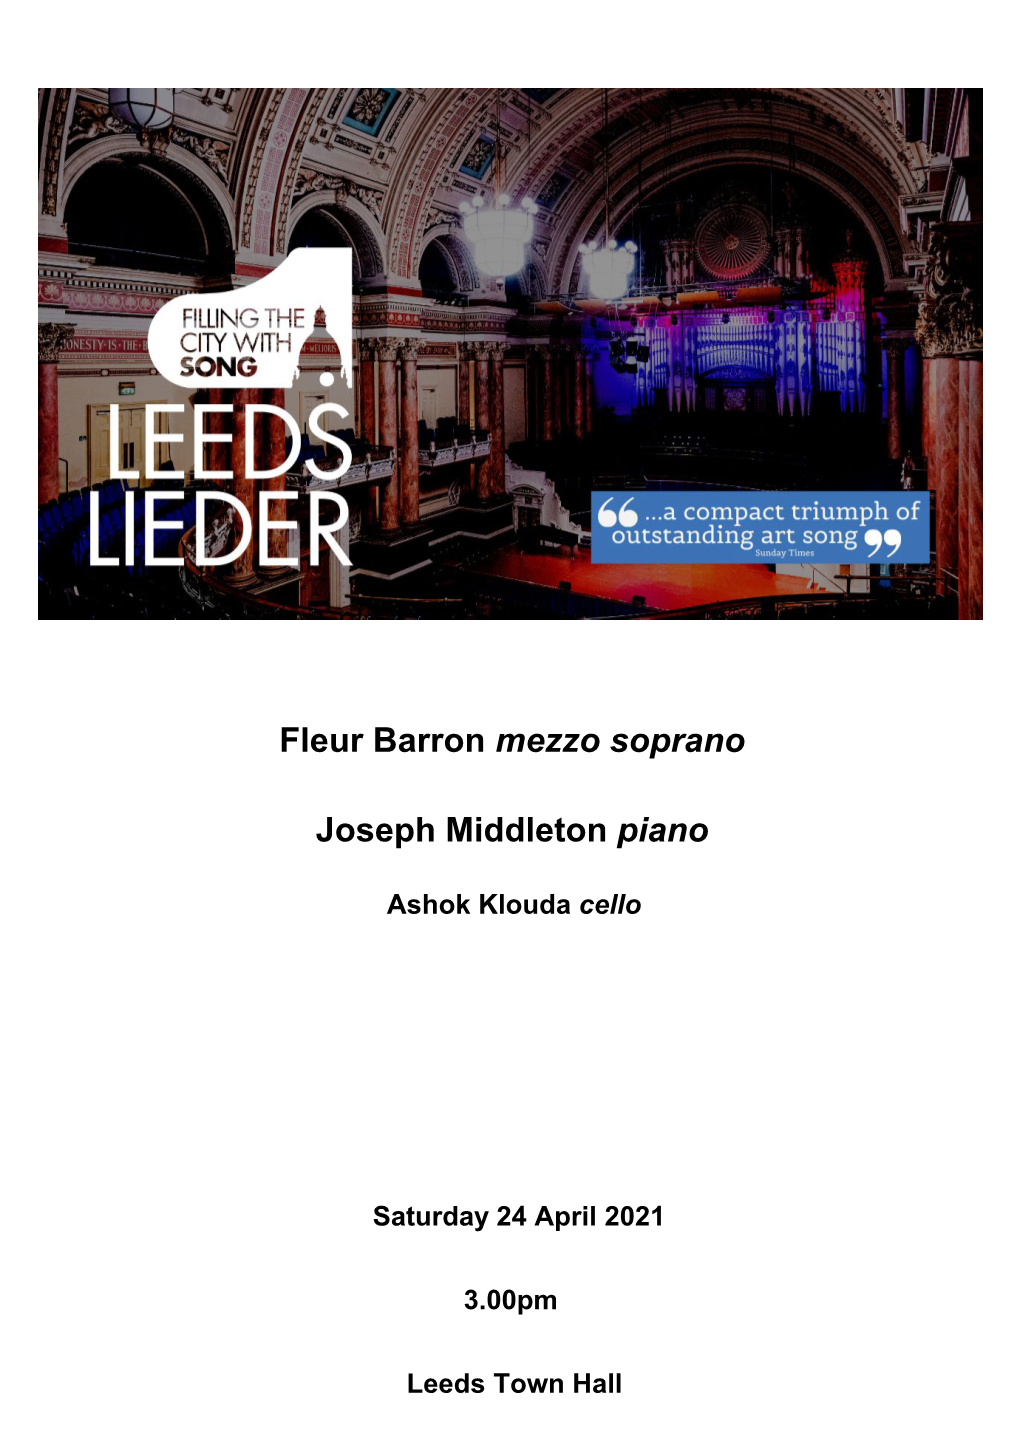 Fleur Barron Mezzo Soprano Joseph Middleton Piano